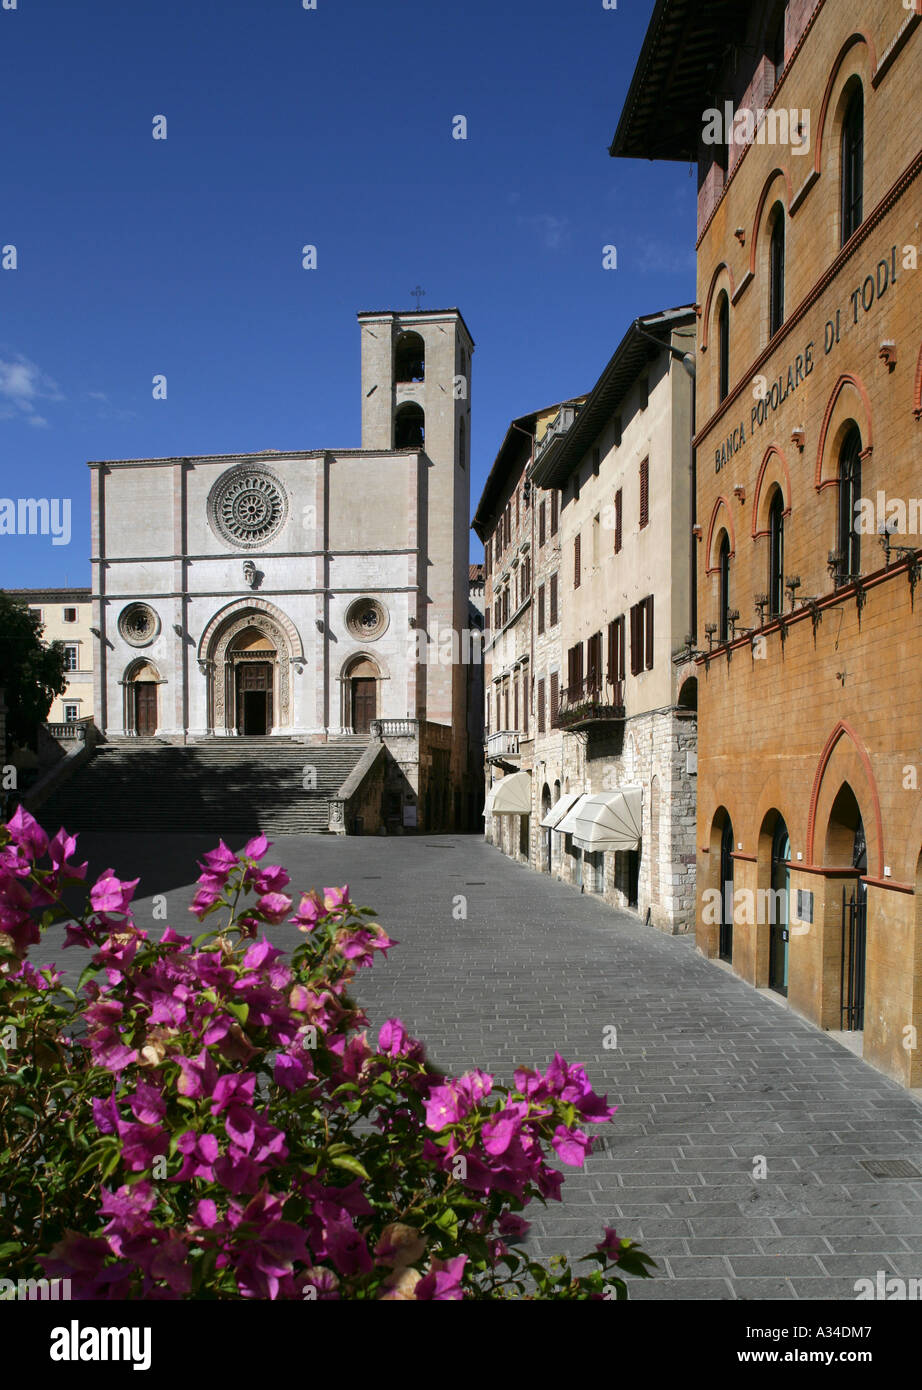 La cathédrale romane, Todi, Ombrie, Italie. Banque D'Images